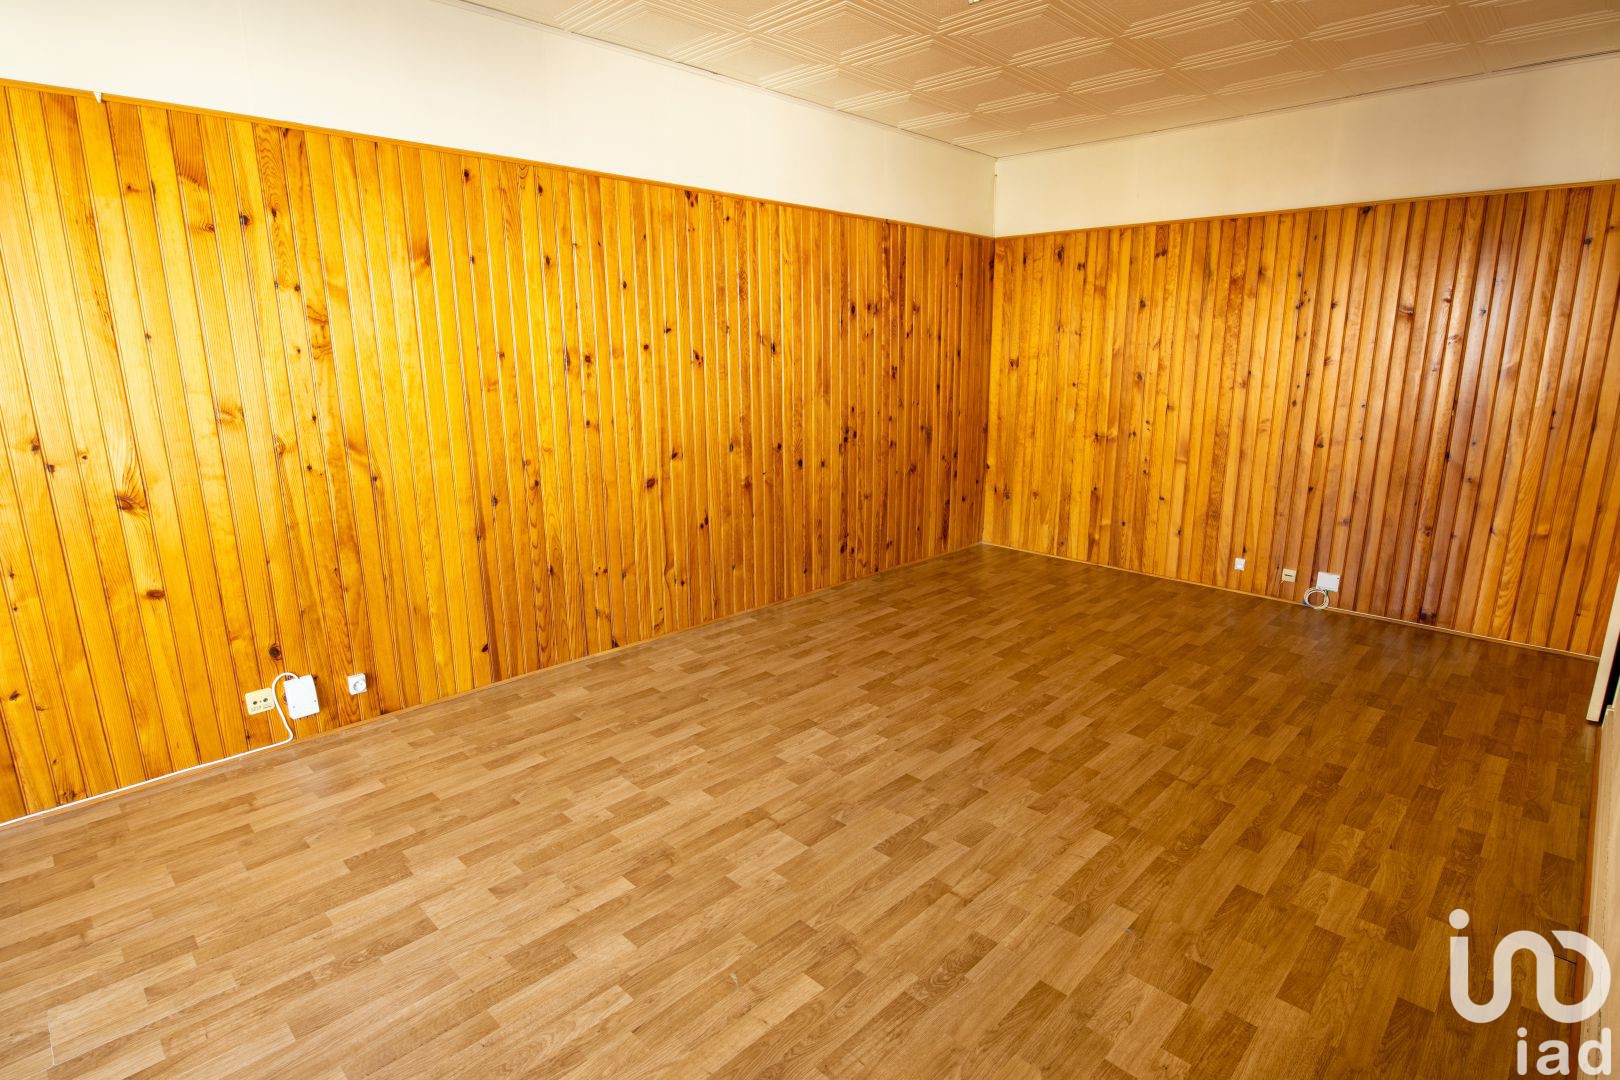 Vente studio 29 m2